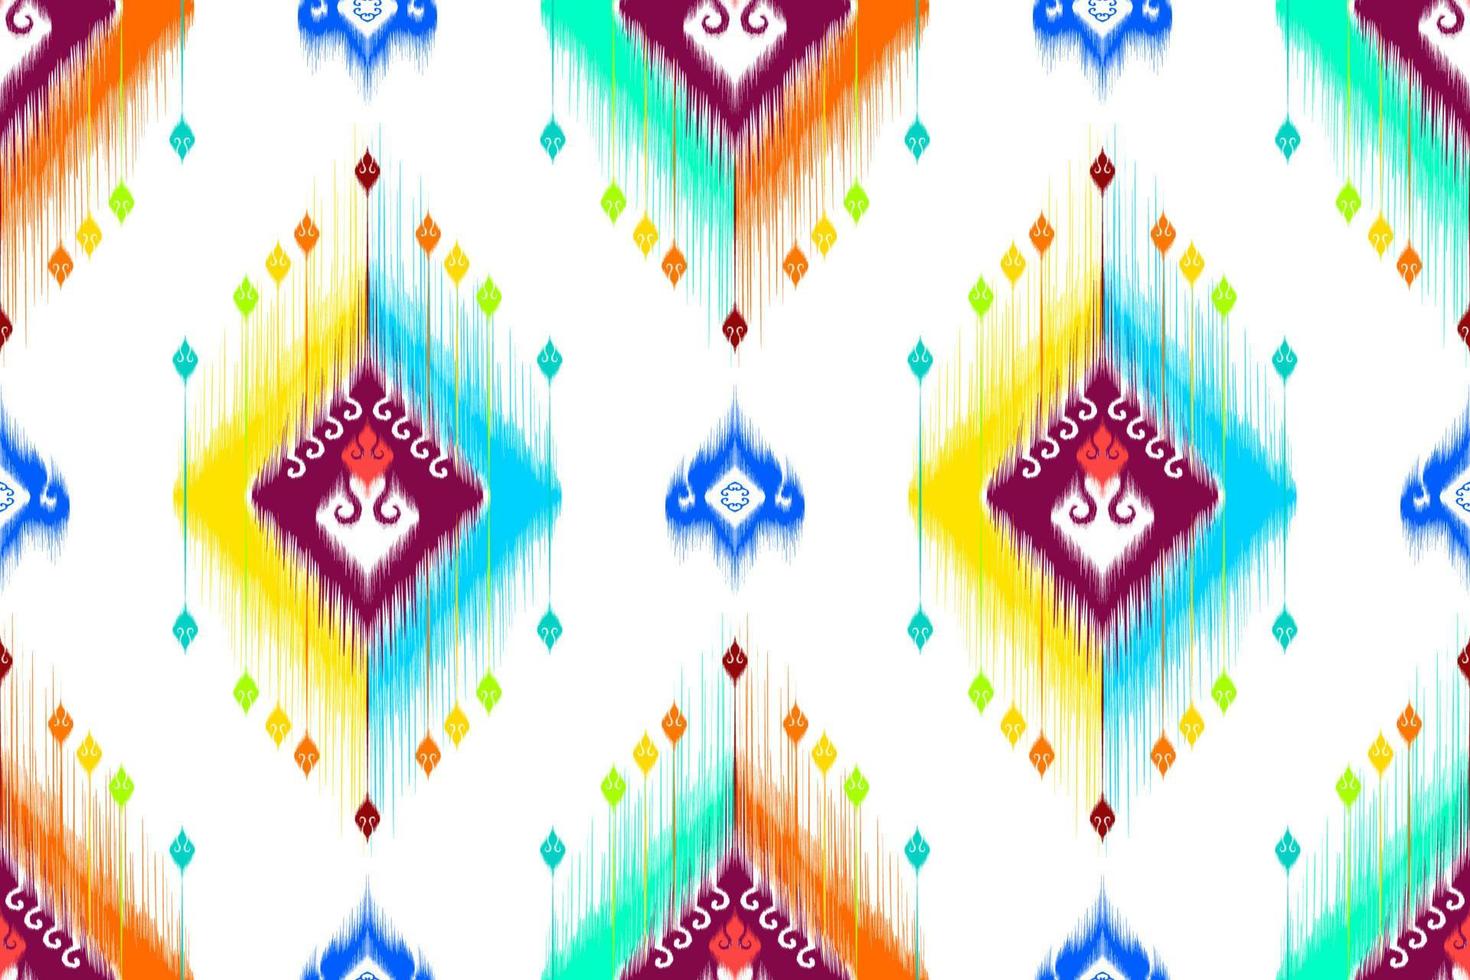 ikat geometrisch abstract etnisch patroonontwerp. Azteekse stof tapijt mandala ornament etnische chevron textiel decoratie behang. tribal boho inheemse etnische traditionele borduurwerk vector achtergrond